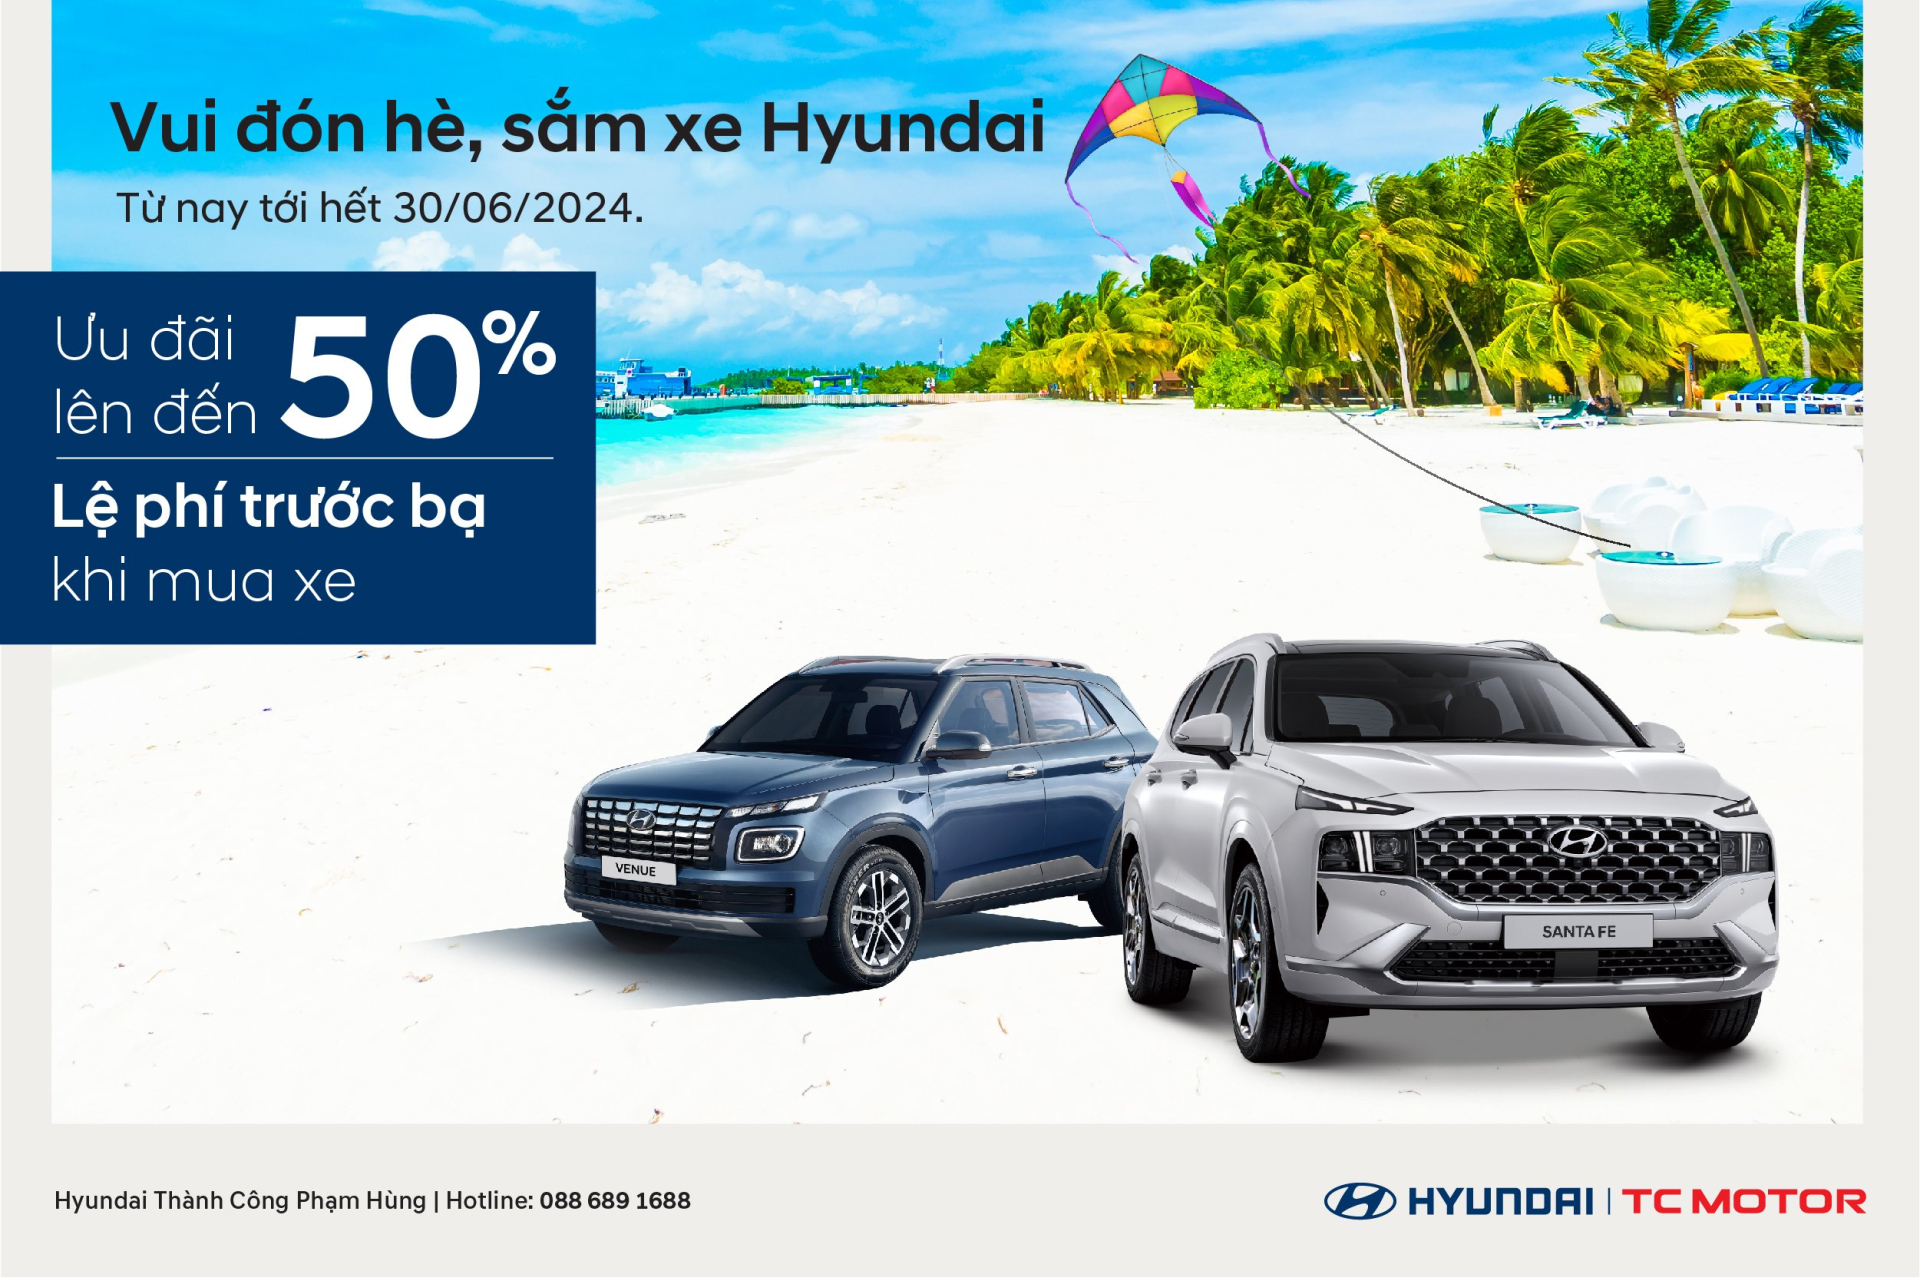 “Vui đón hè – Sắm xe Hyundai” ngập tràn ưu đãi tại Hyundai Phạm Hùng